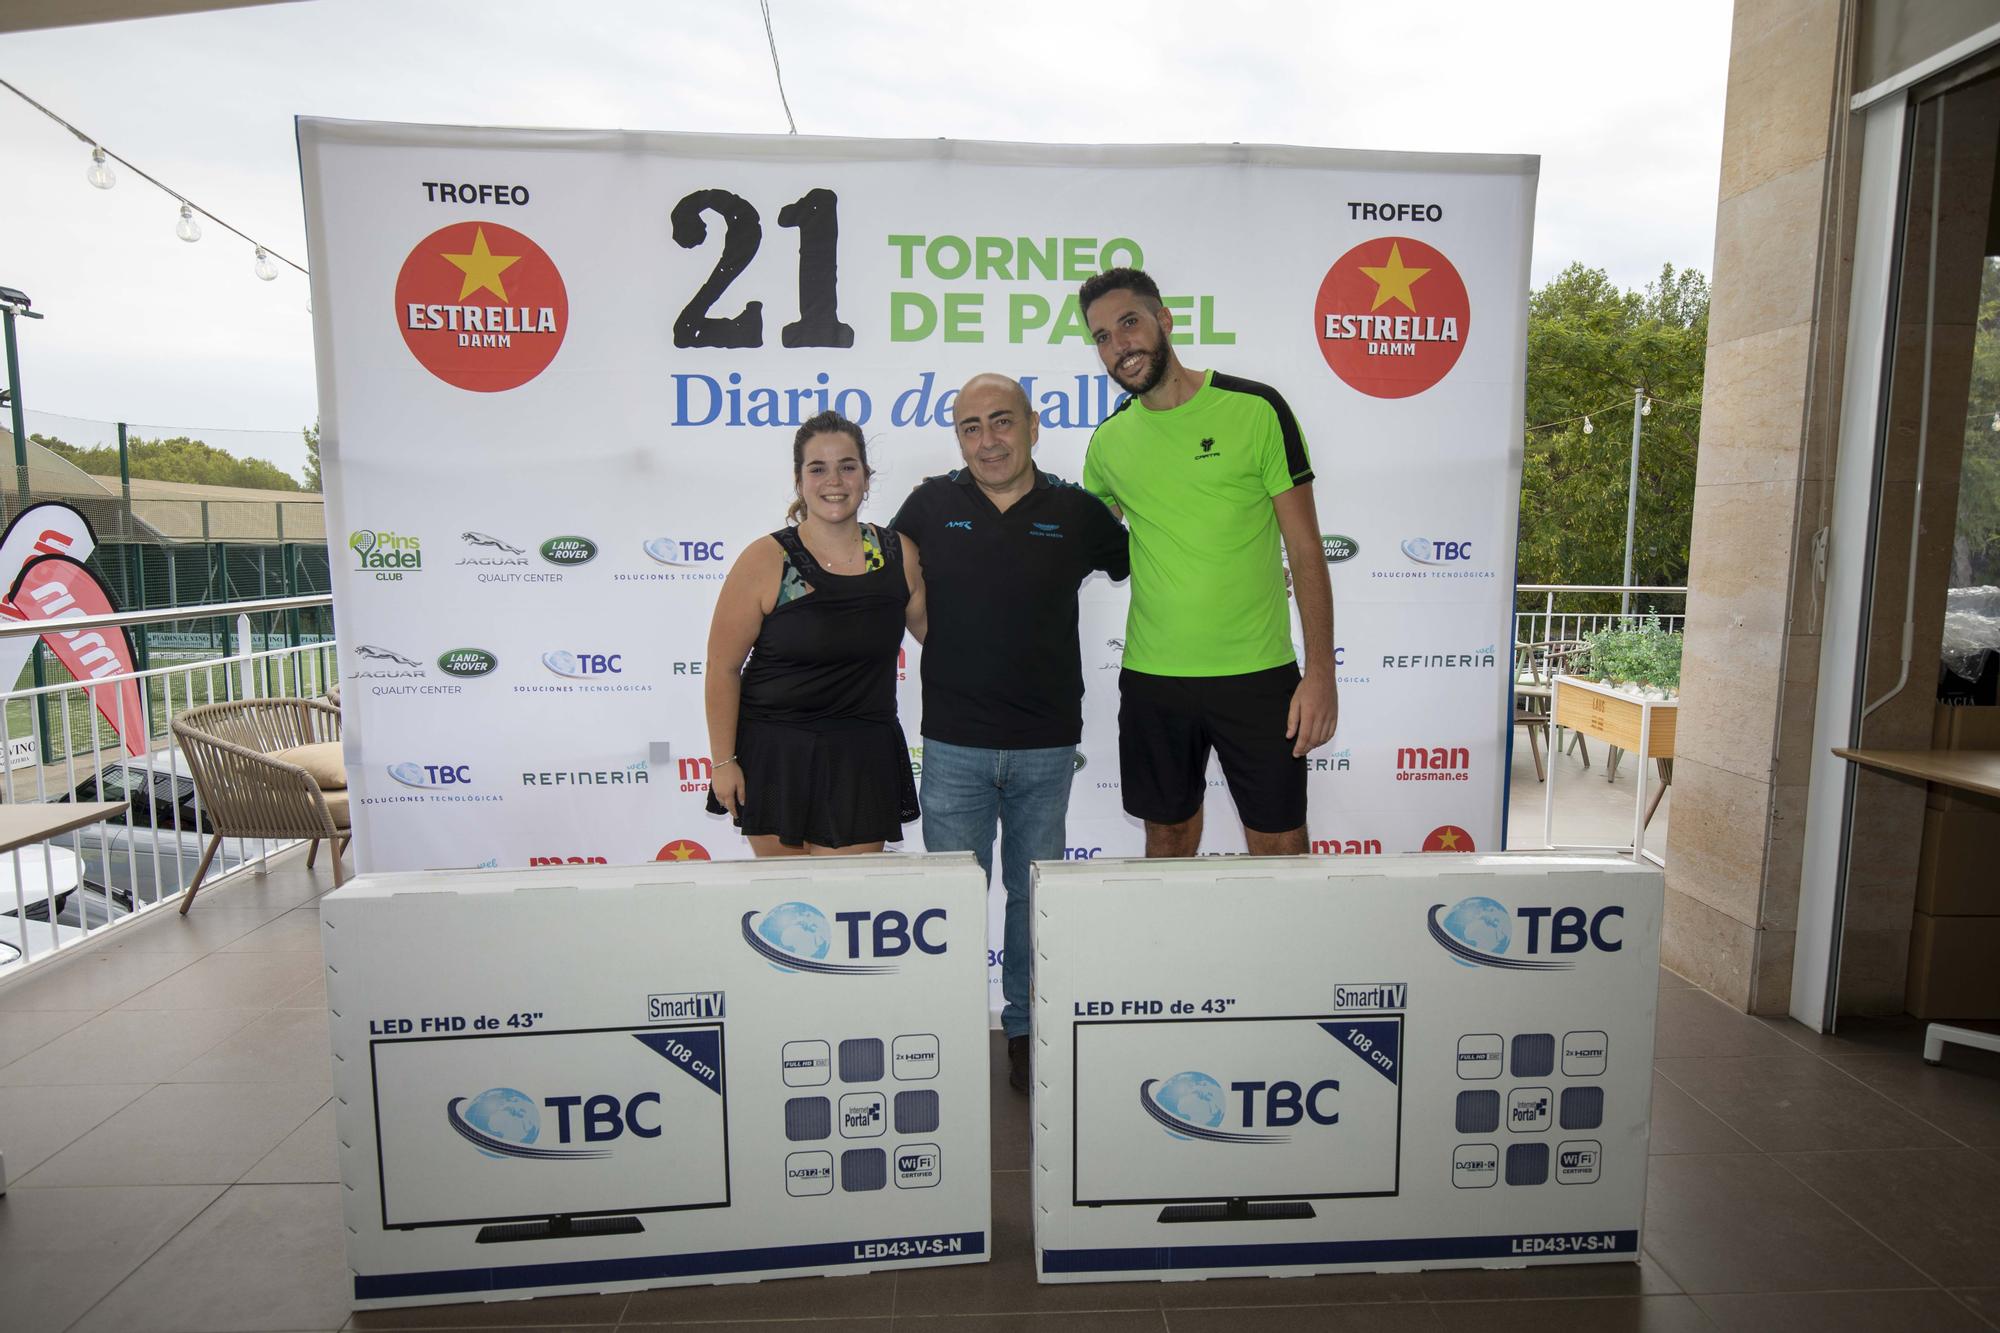 Ganadores mixtos B. Doble premio para Neus Barceló y Ángel Bonilla al coronarse como campeones y ser agraciados con dos Smart TV cortesía de TBC.